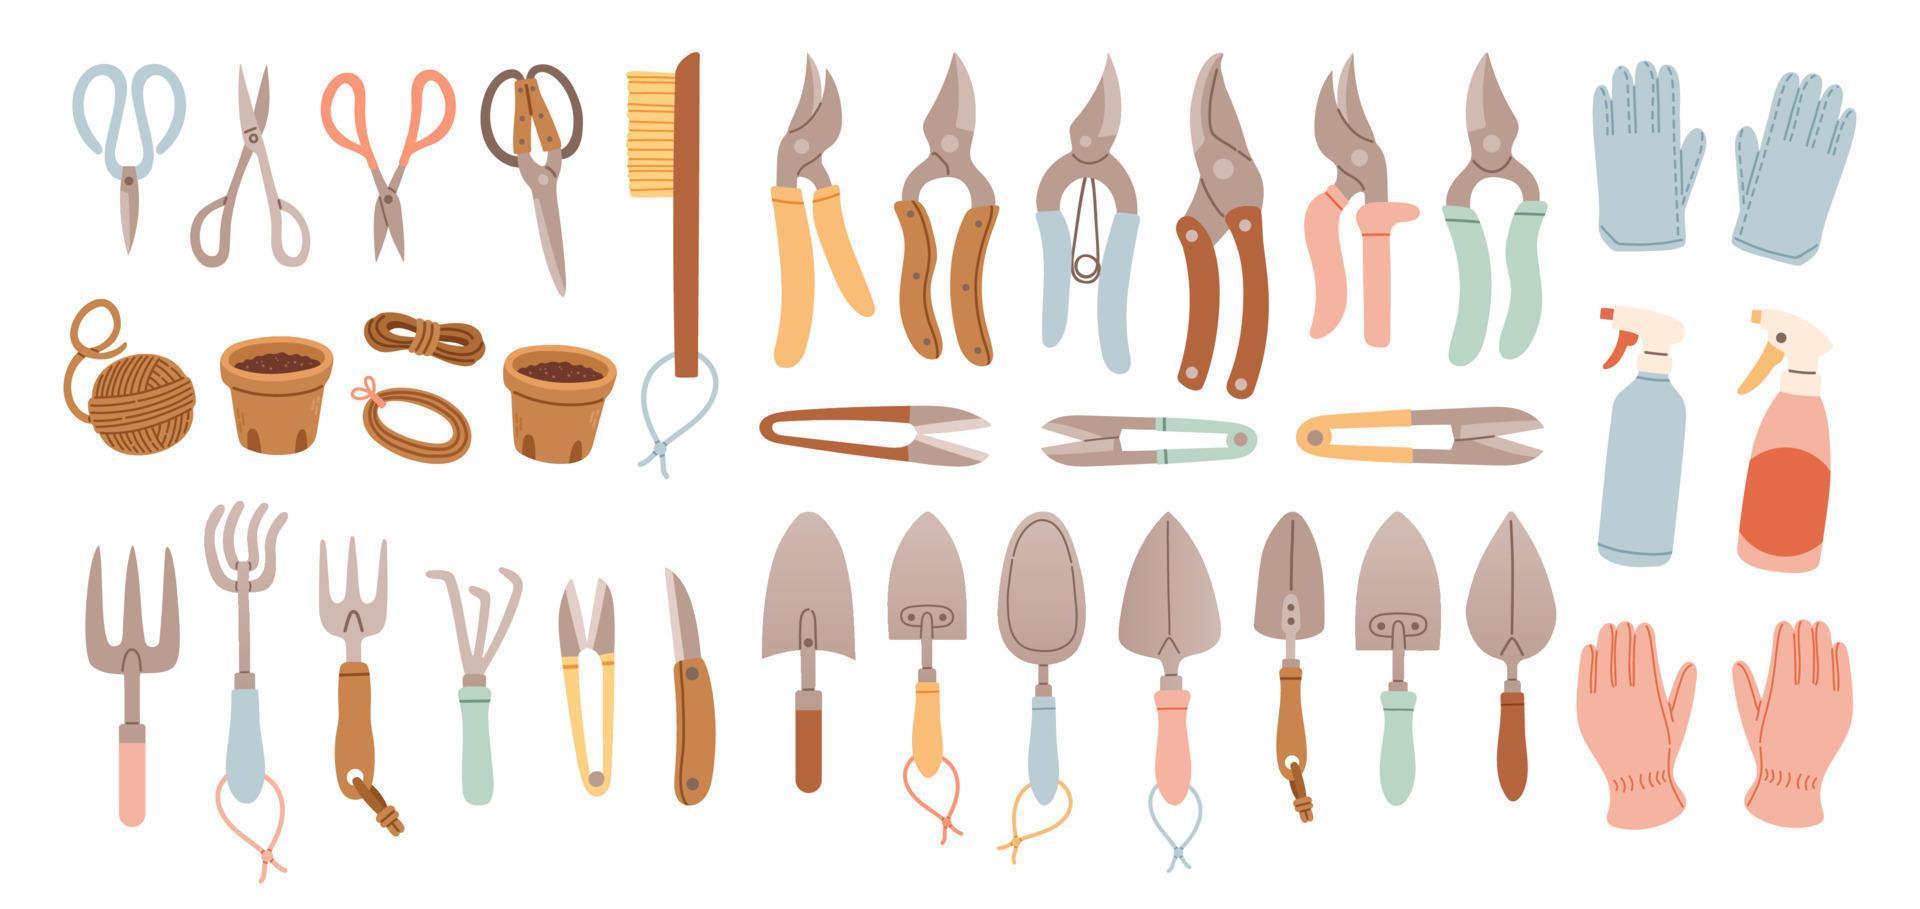 grande conjunto de jardinería artículos en mano dibujado estilo. agrícola y jardín herramientas para primavera trabajar. vector aislado en blanco